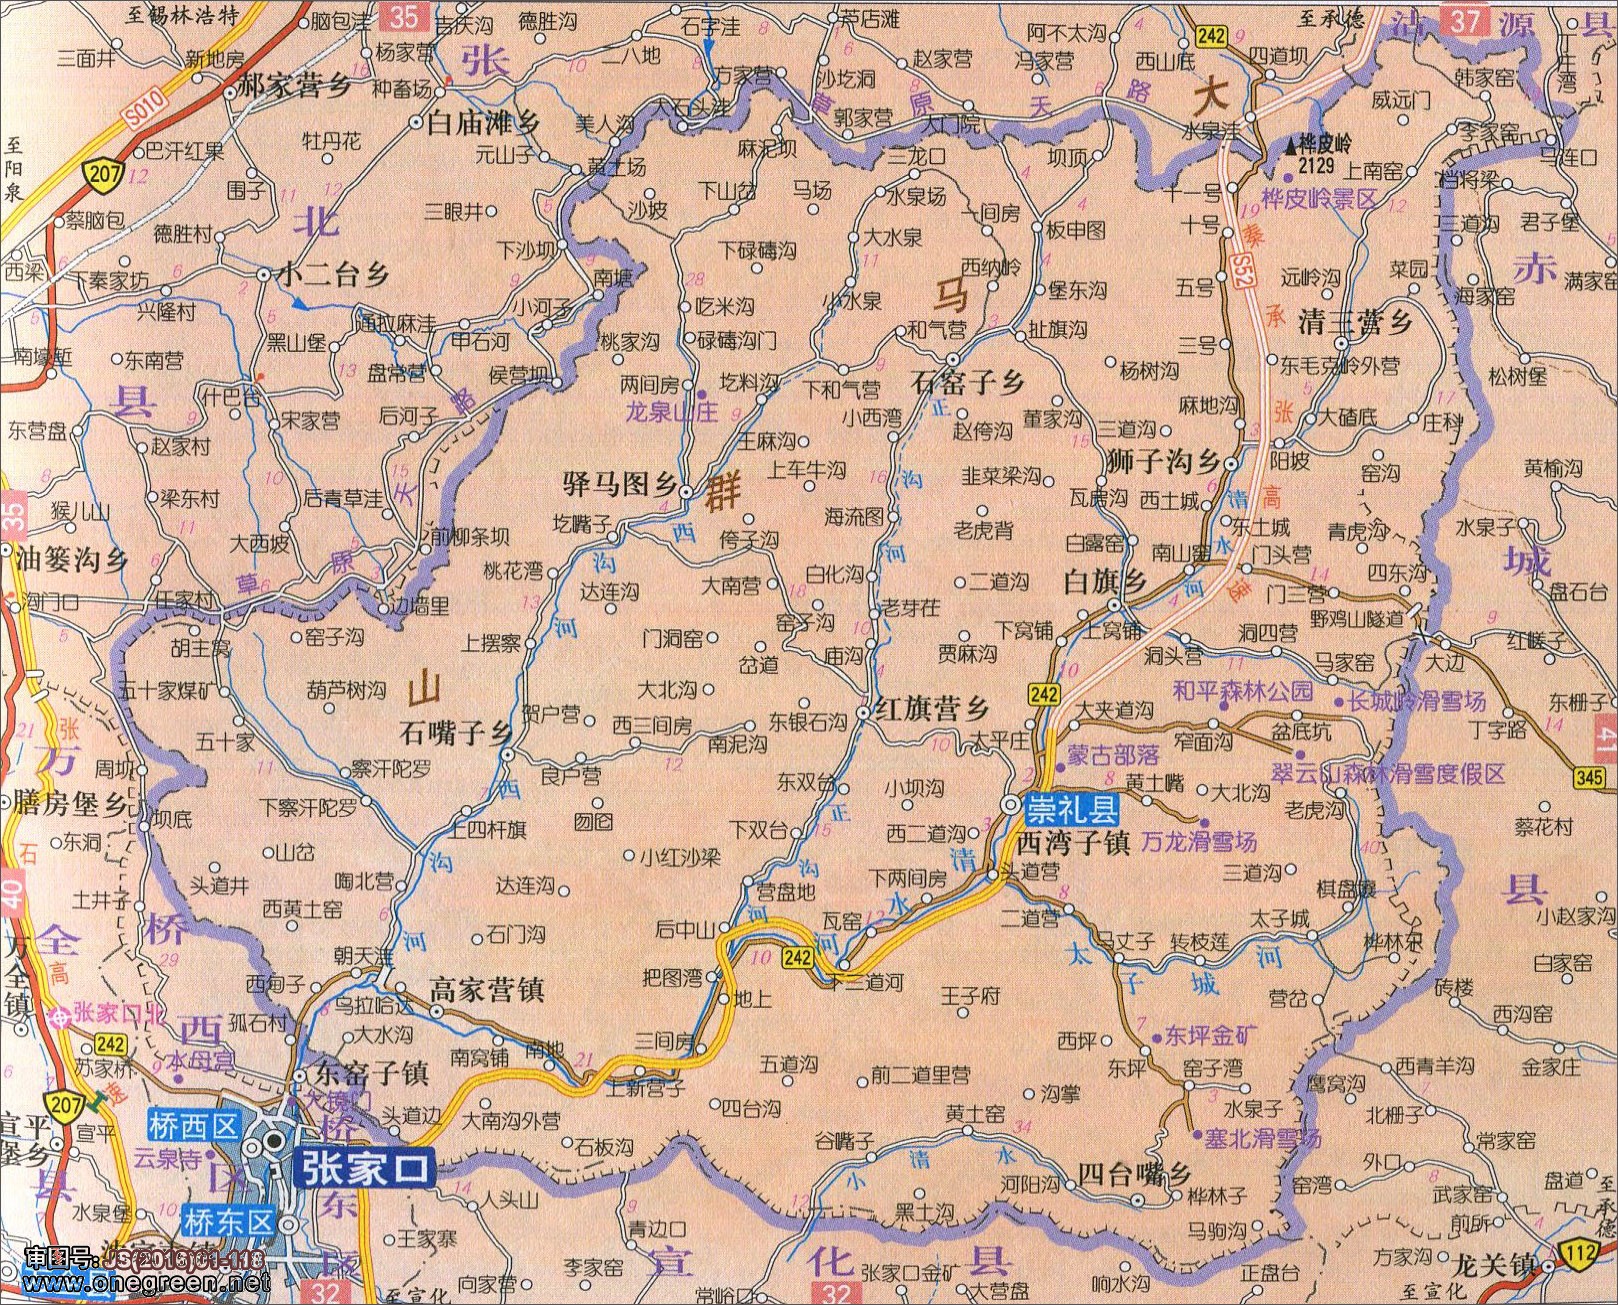 保定  张家口  沧州  廊坊  衡水 上一张地图: 赤城县地图  | 张家口图片